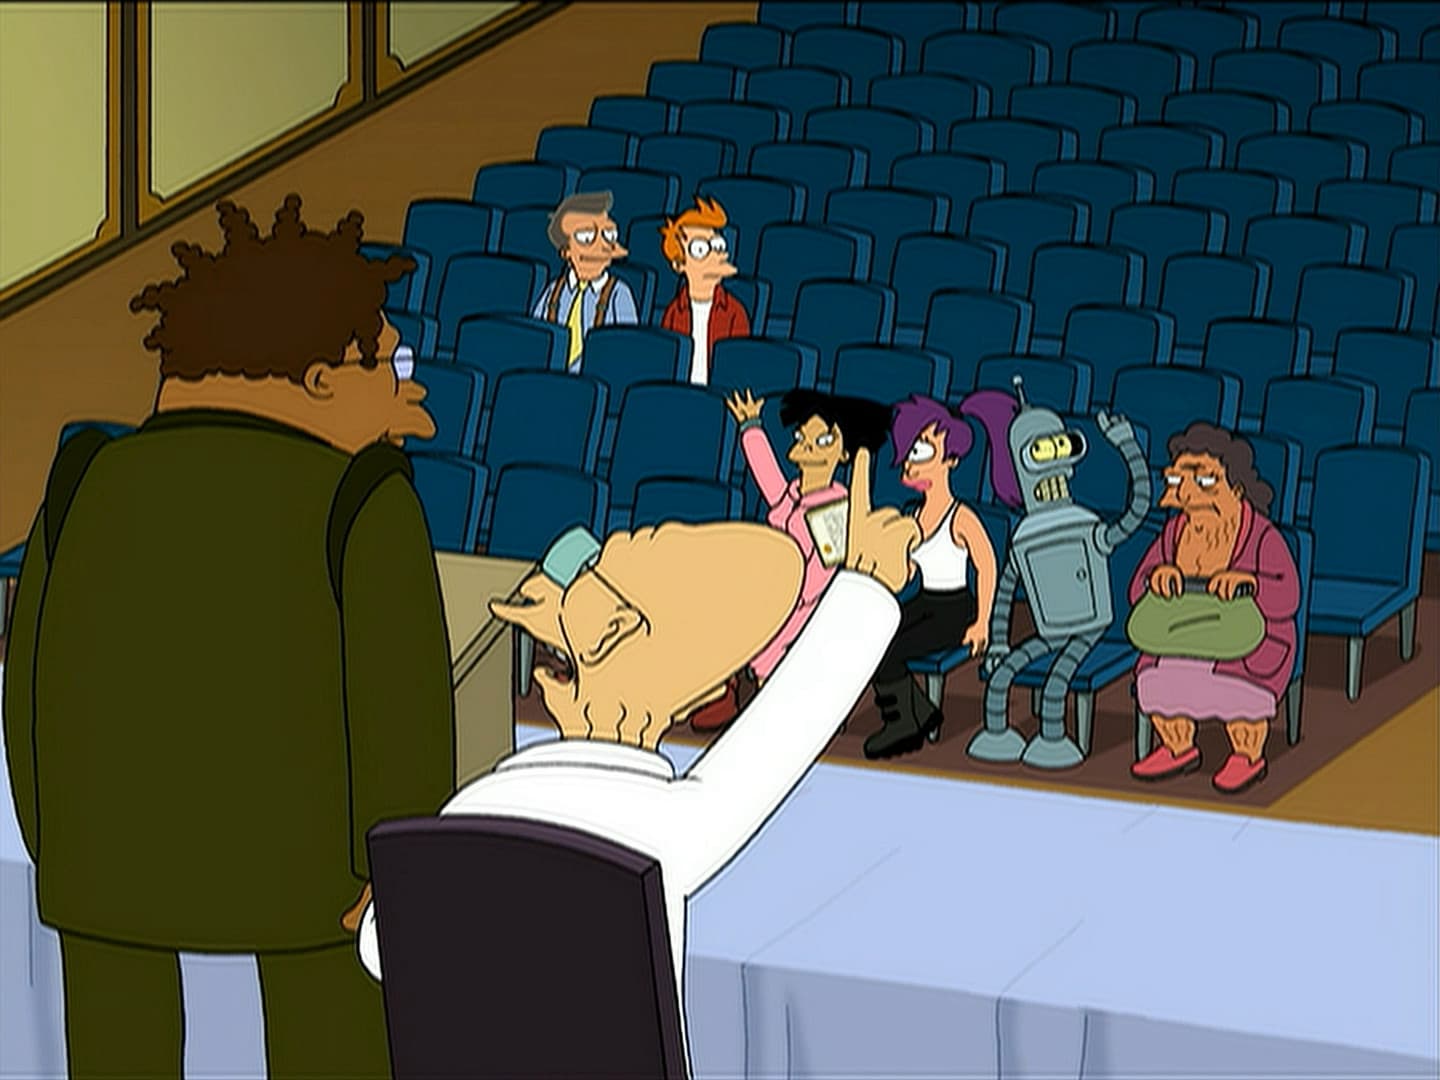 Scene where Amy,Leela, Bender,Hermes and Professor votes